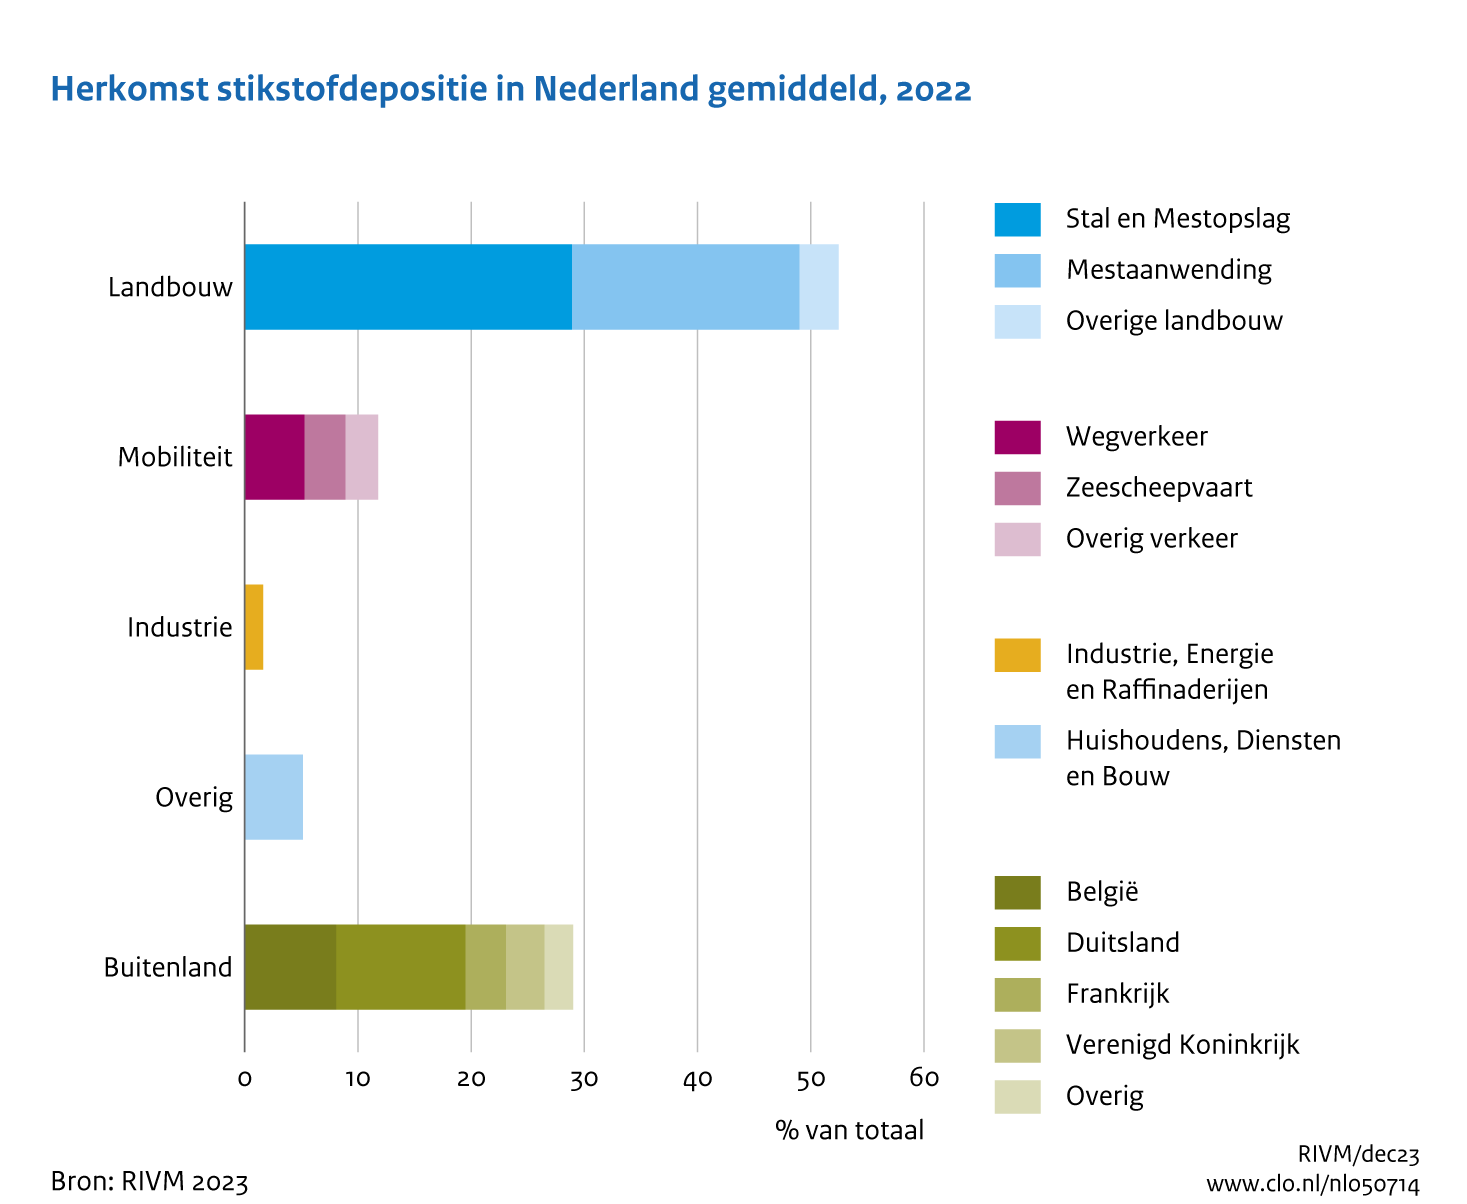 Het grootste deel van de depositie komt van de Nederlandse landbouw. Andere binnenlandse bijdragen zijn wegverkeer en huishoudens, diensten en bouw. Daarnaast komt 29% van de depositie uit het buitenland.